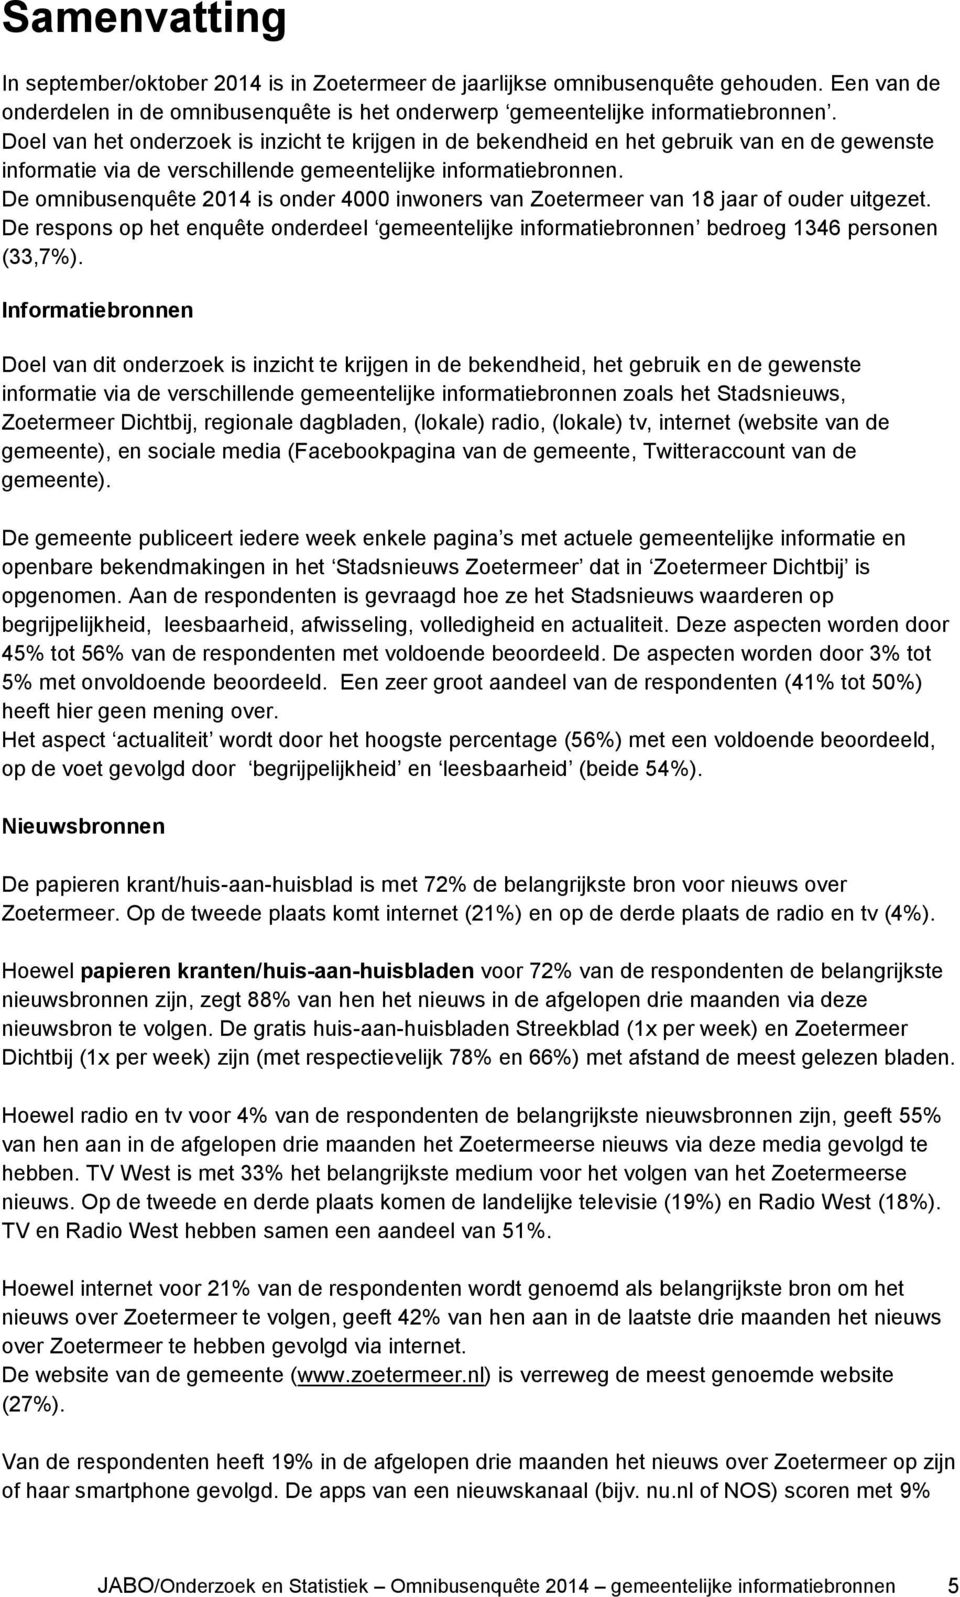 De omnibusenquête 2014 is onder 4000 inwoners van Zoetermeer van 18 jaar of ouder uitgezet. De respons op het enquête onderdeel gemeentelijke informatiebronnen bedroeg 1346 personen (33,7%).